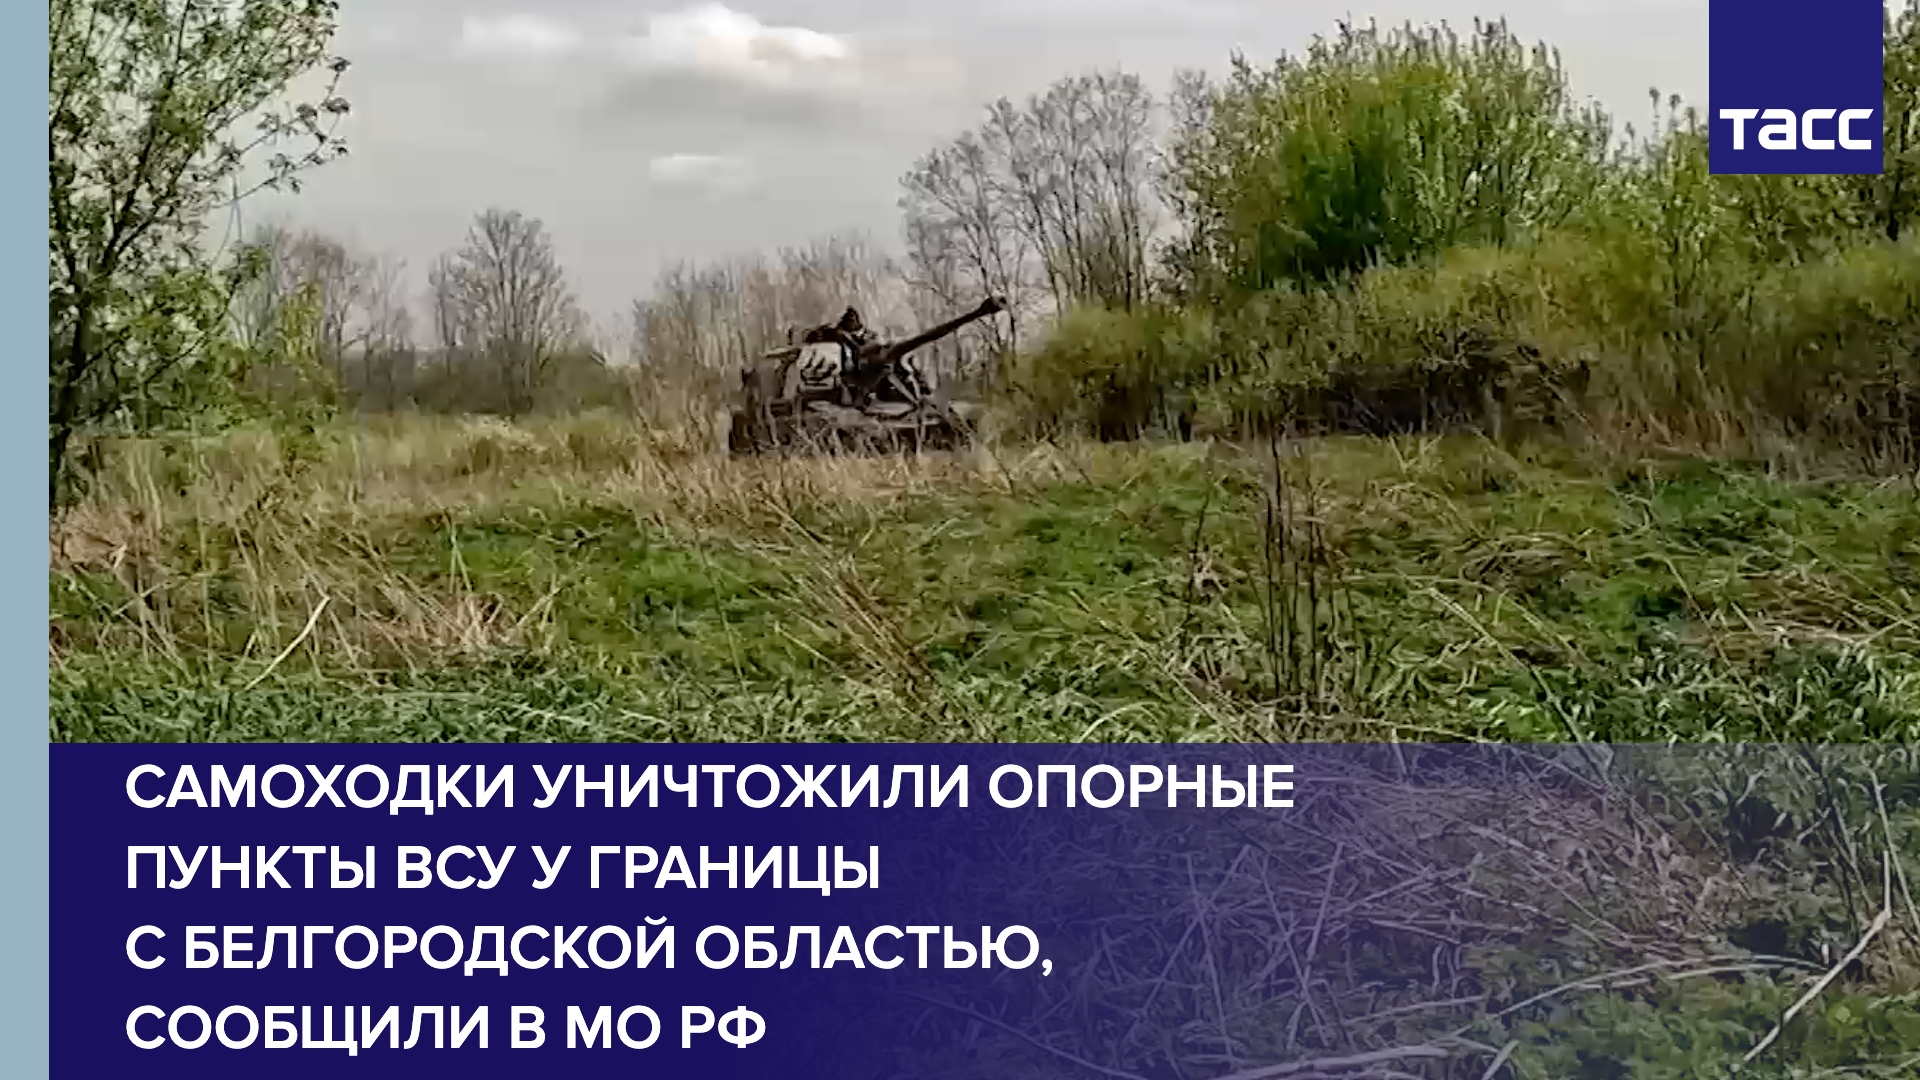 Самоходки уничтожили опорные пункты ВСУ у границы с Белгородской областью